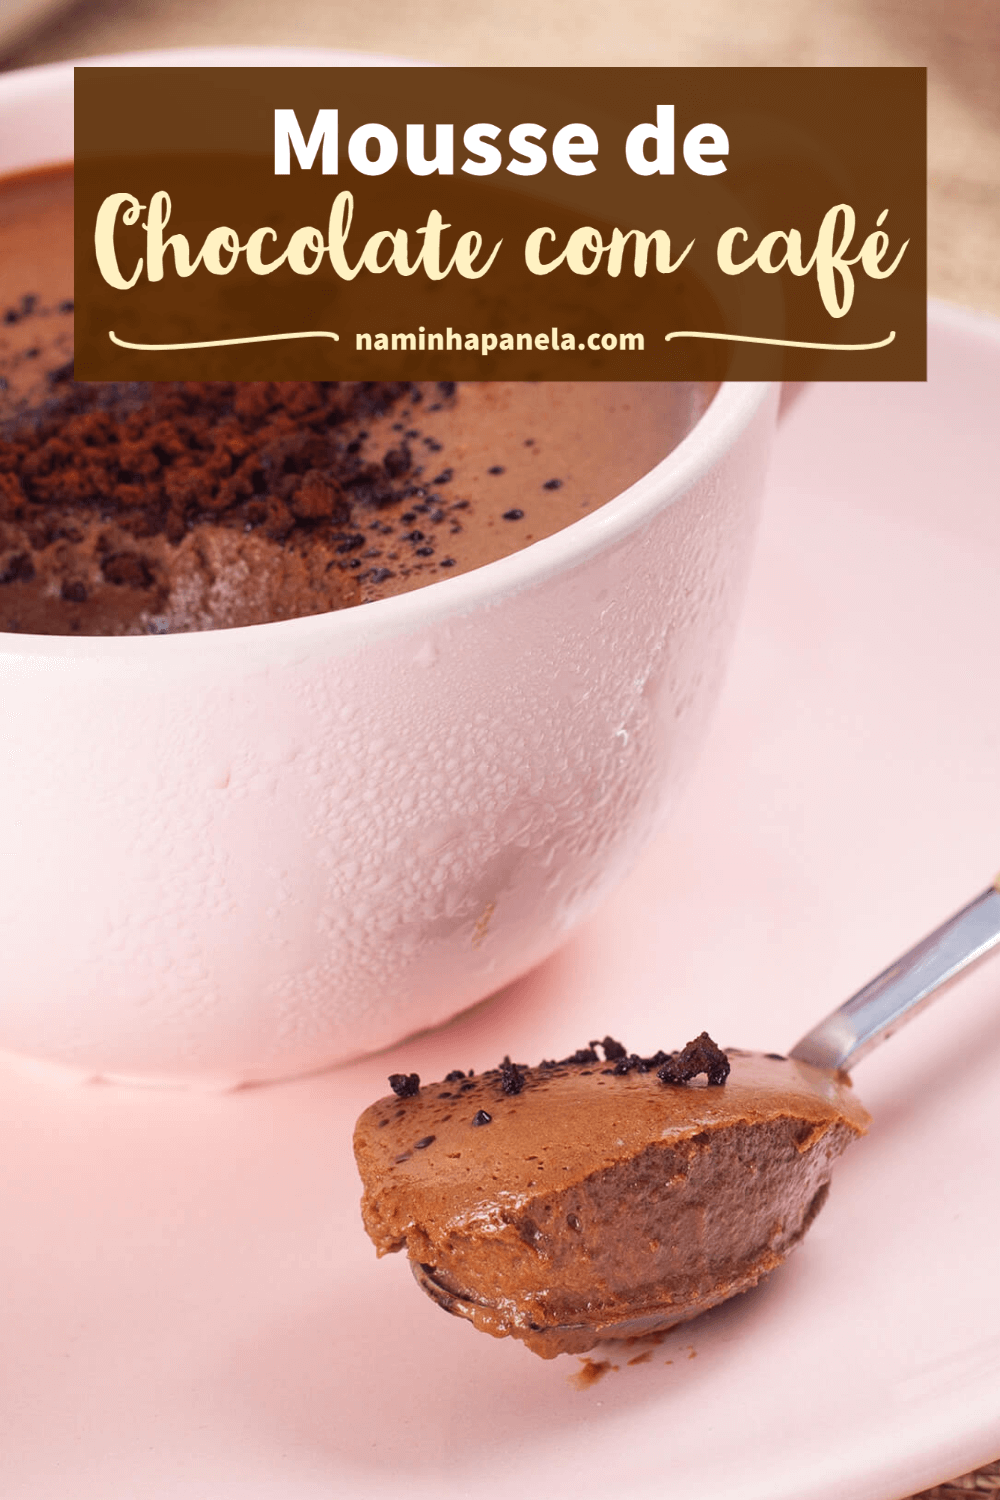 Mousse de chocolate com café - naminhapanela.com